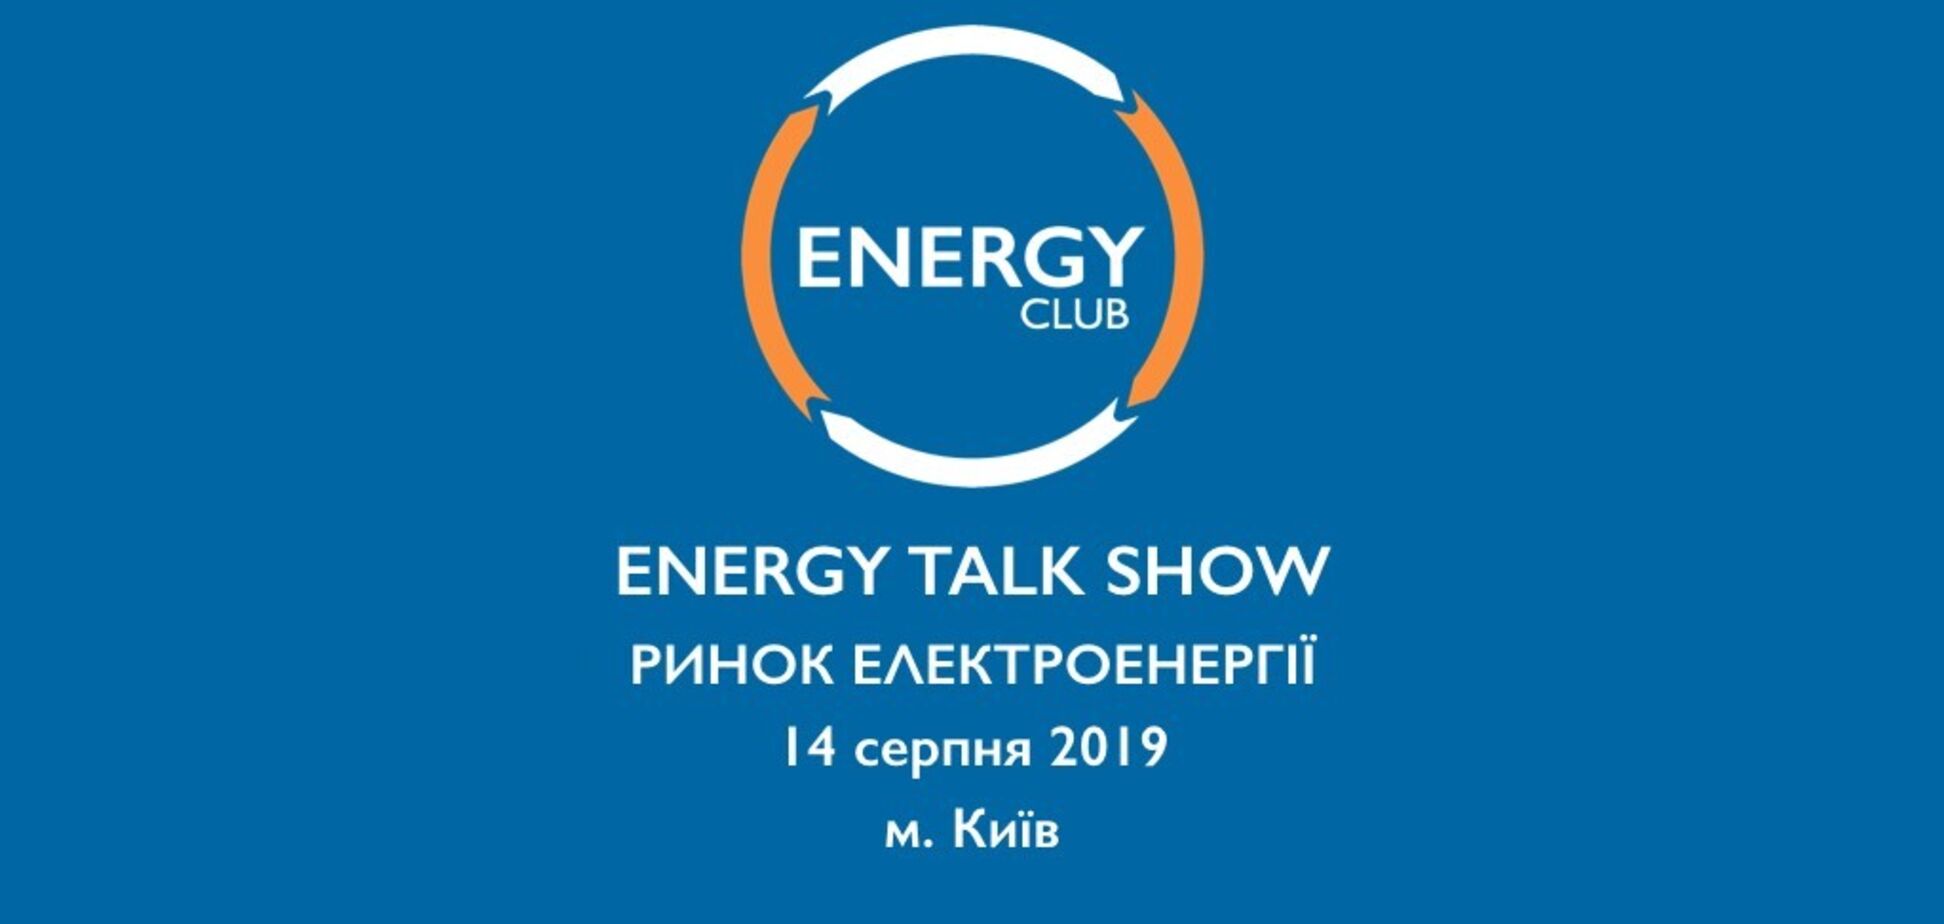 В Україні проведуть Energy Talk Show: що і де будуть обговорювати